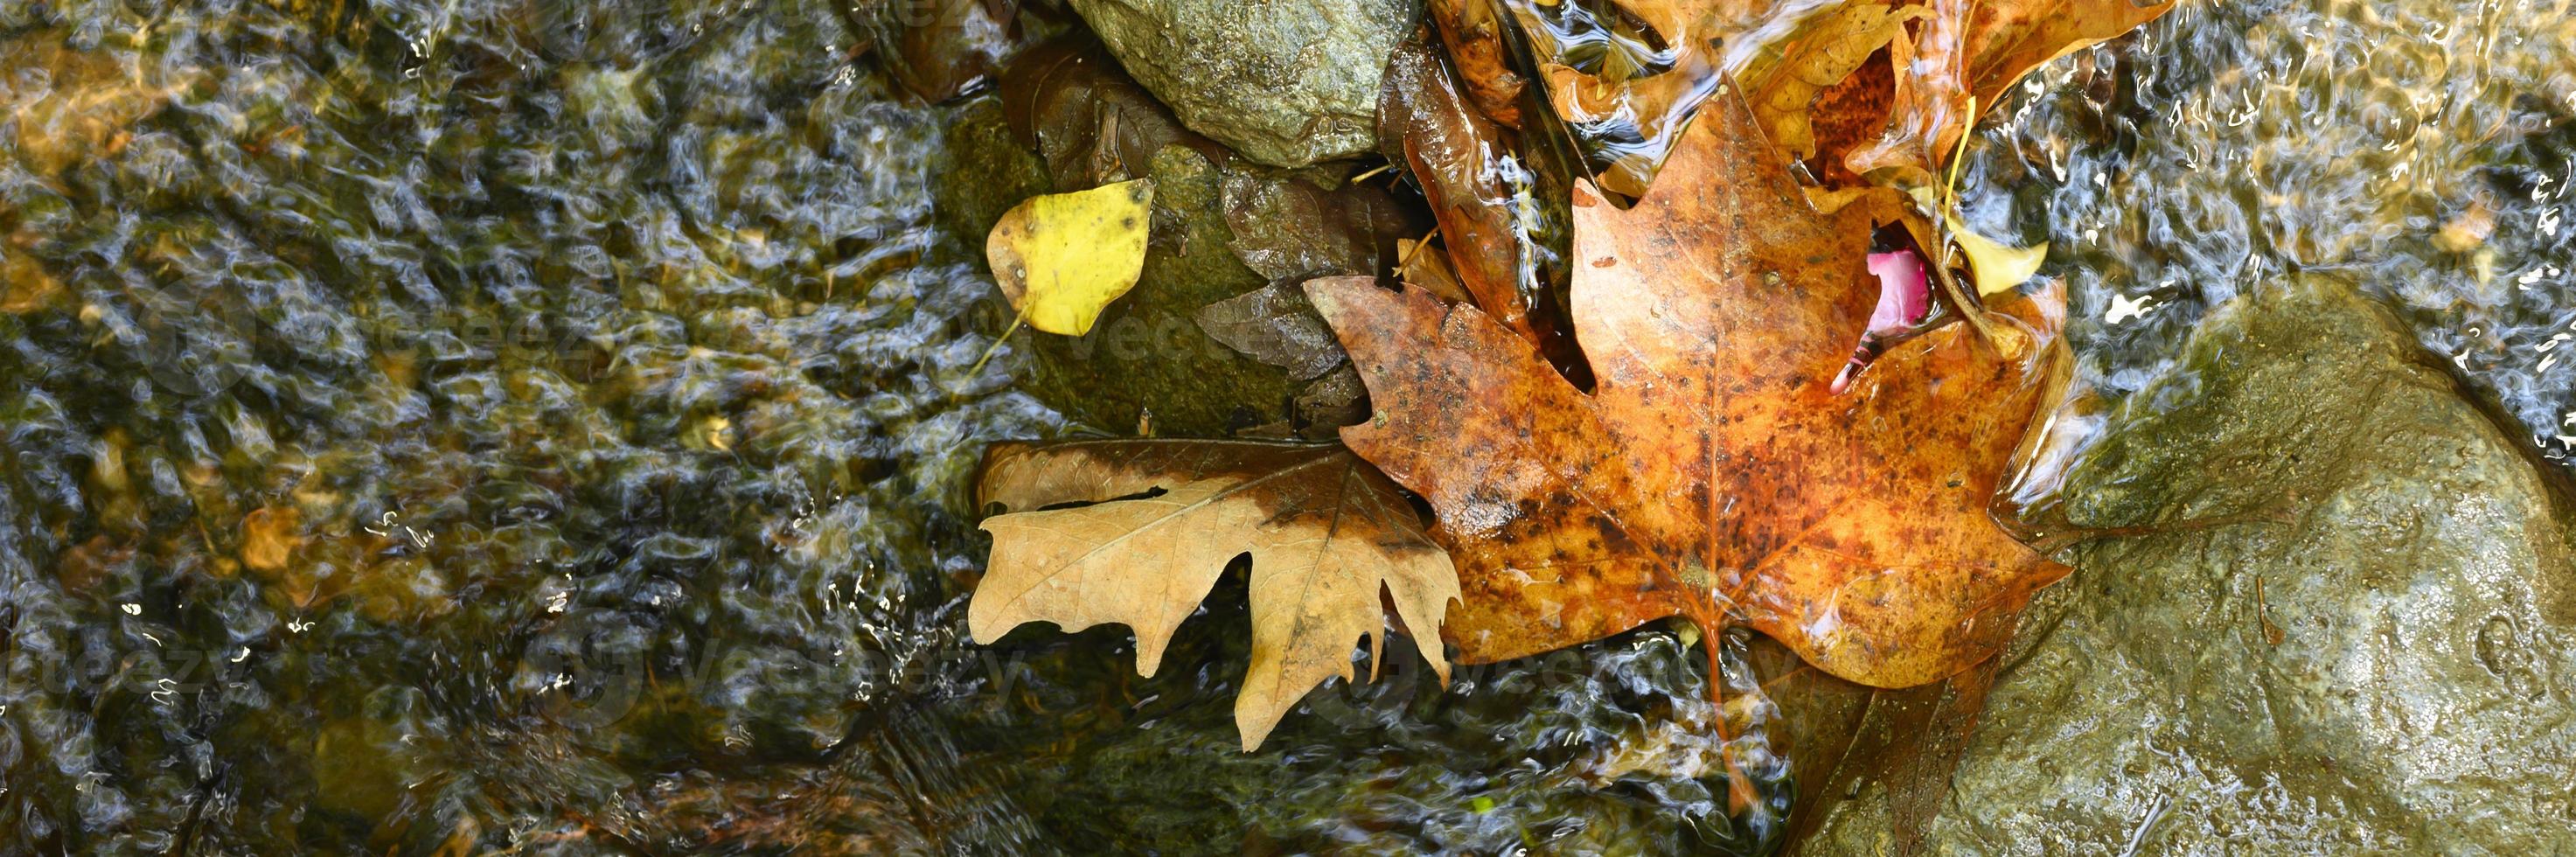 Hojas de arce de otoño caídas húmedas en el agua y rocas foto